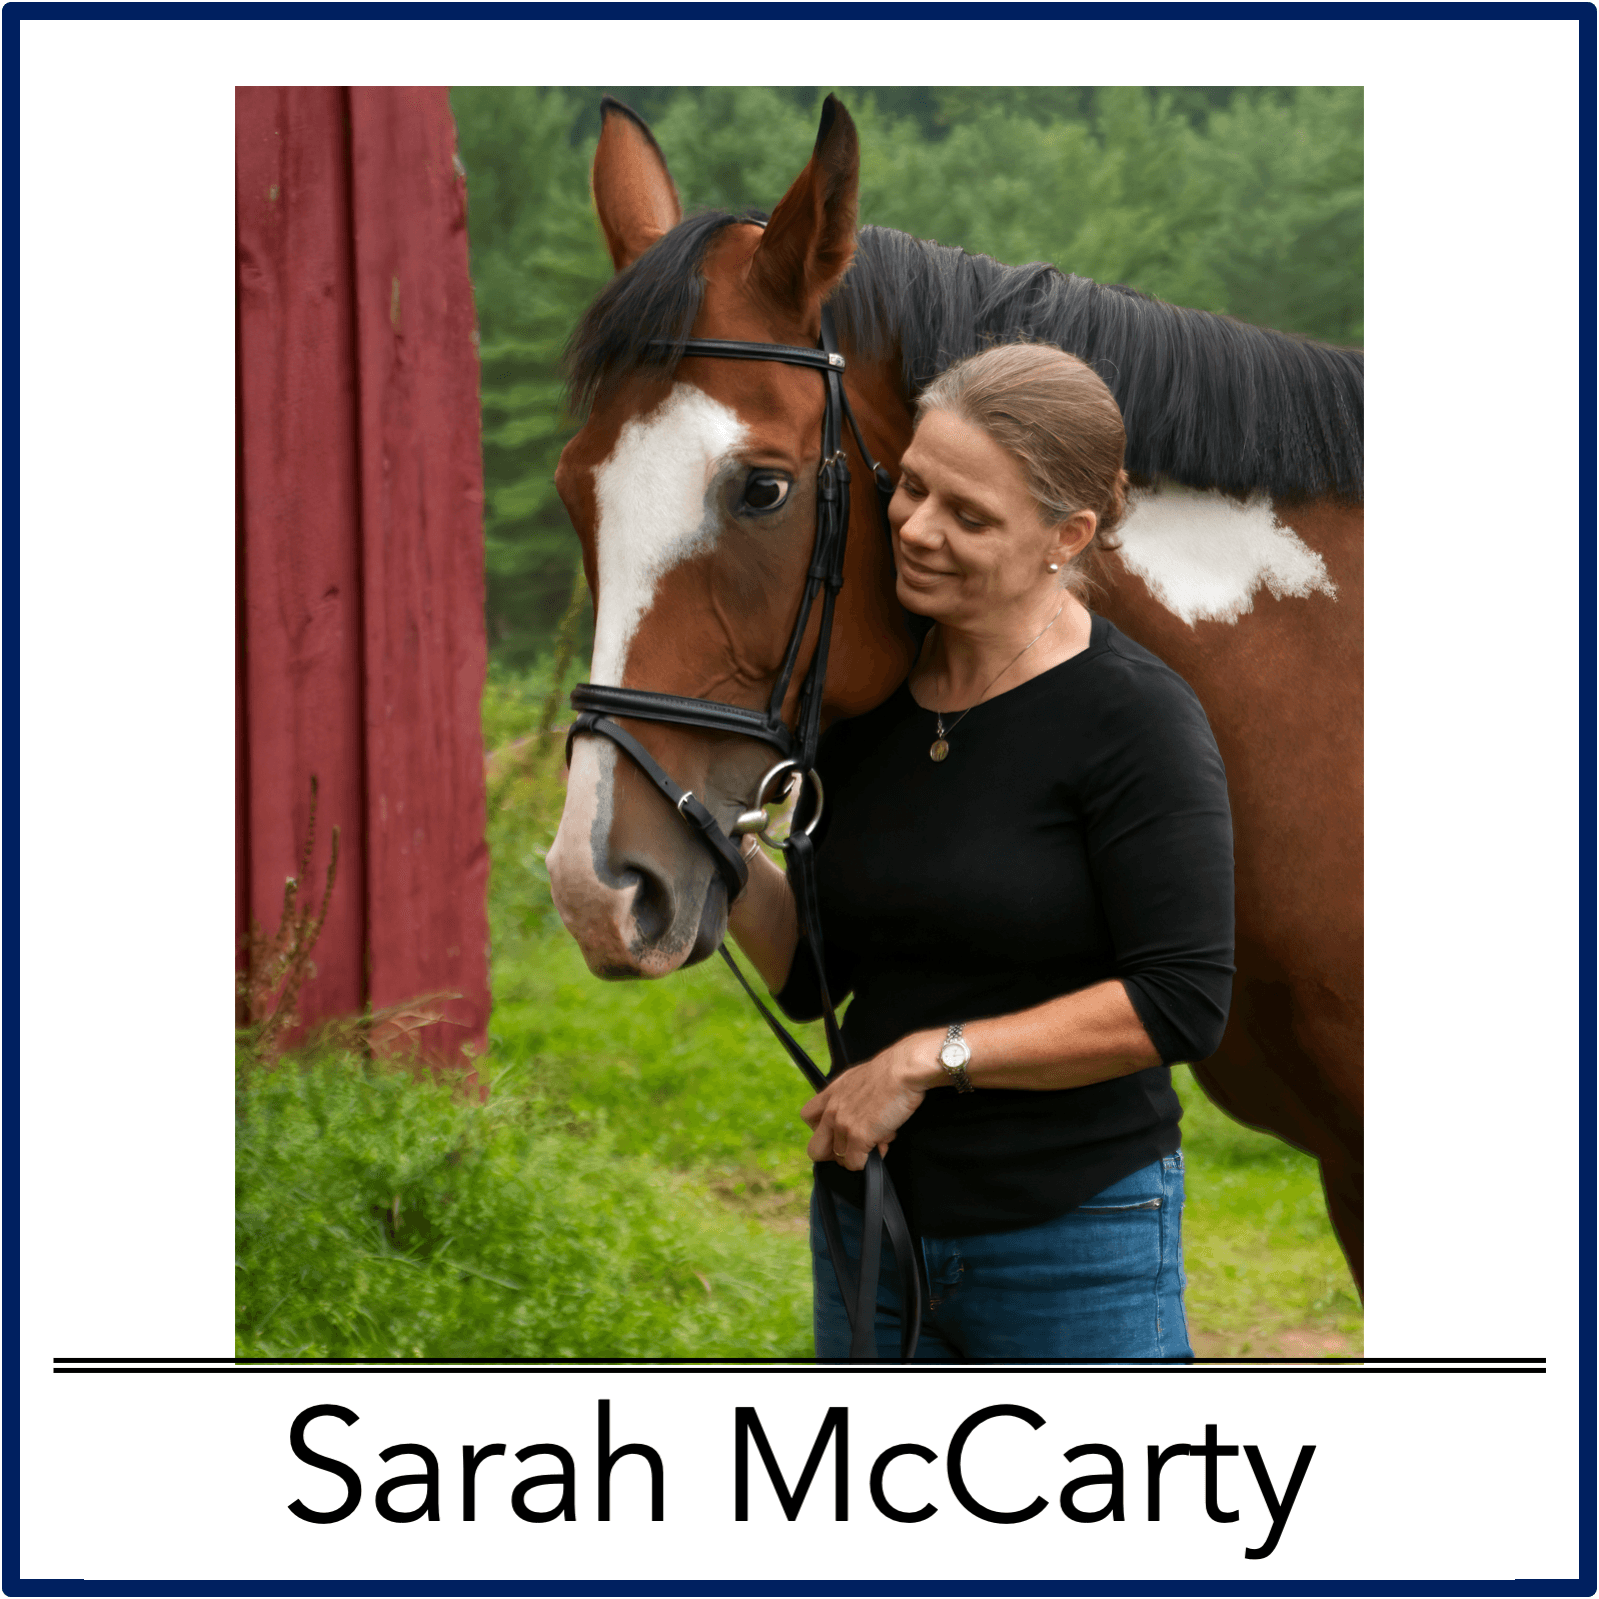 Sarah McCarty